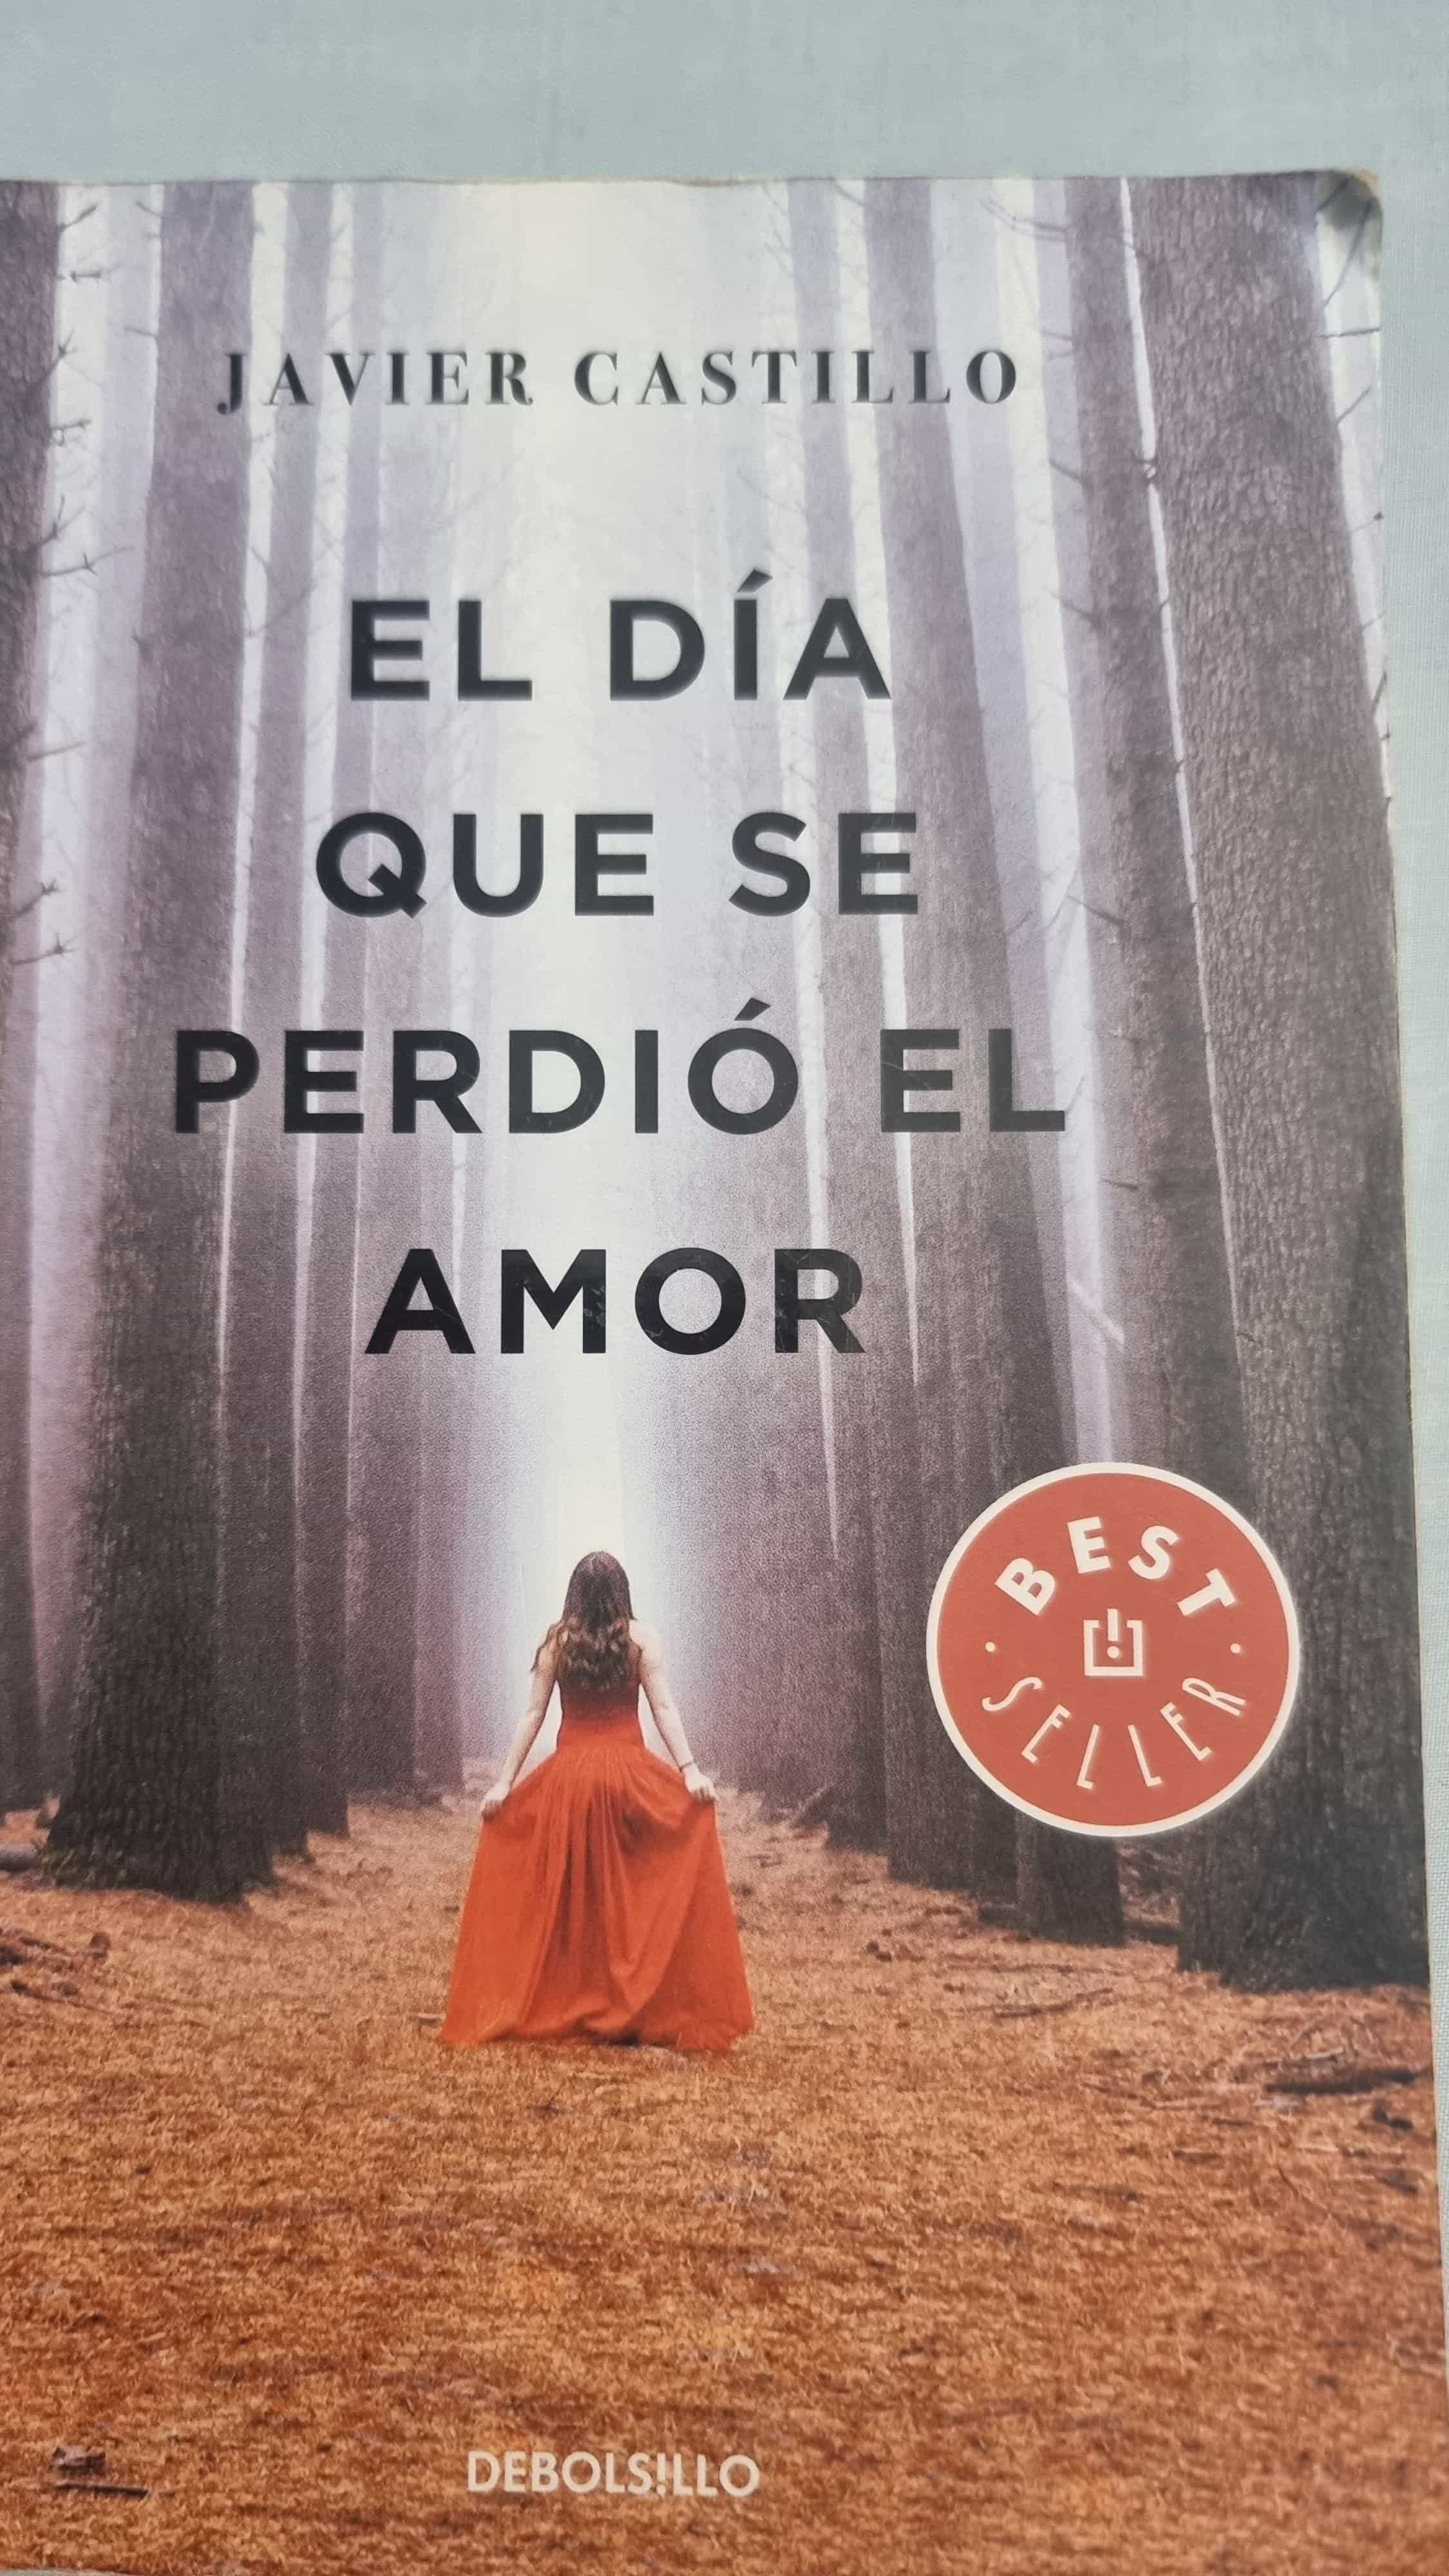 El Día Que Se Perdió El Amor Una Intrigante Novela De Javier Castillo